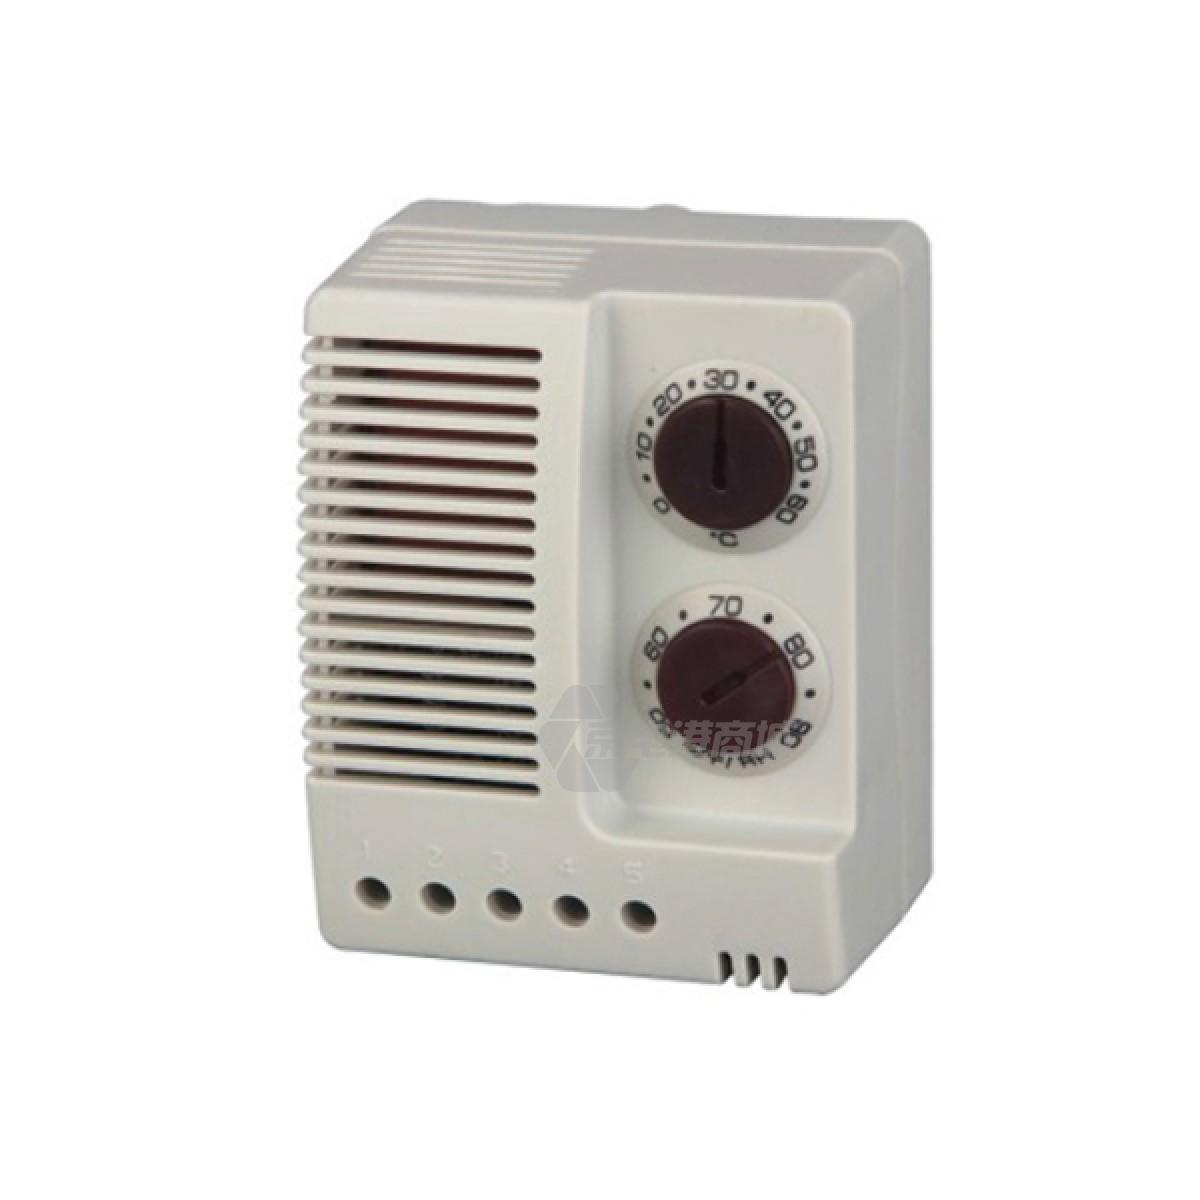 Cofeng Electronic Hygrothermostat PTF012 电子式温度控制器